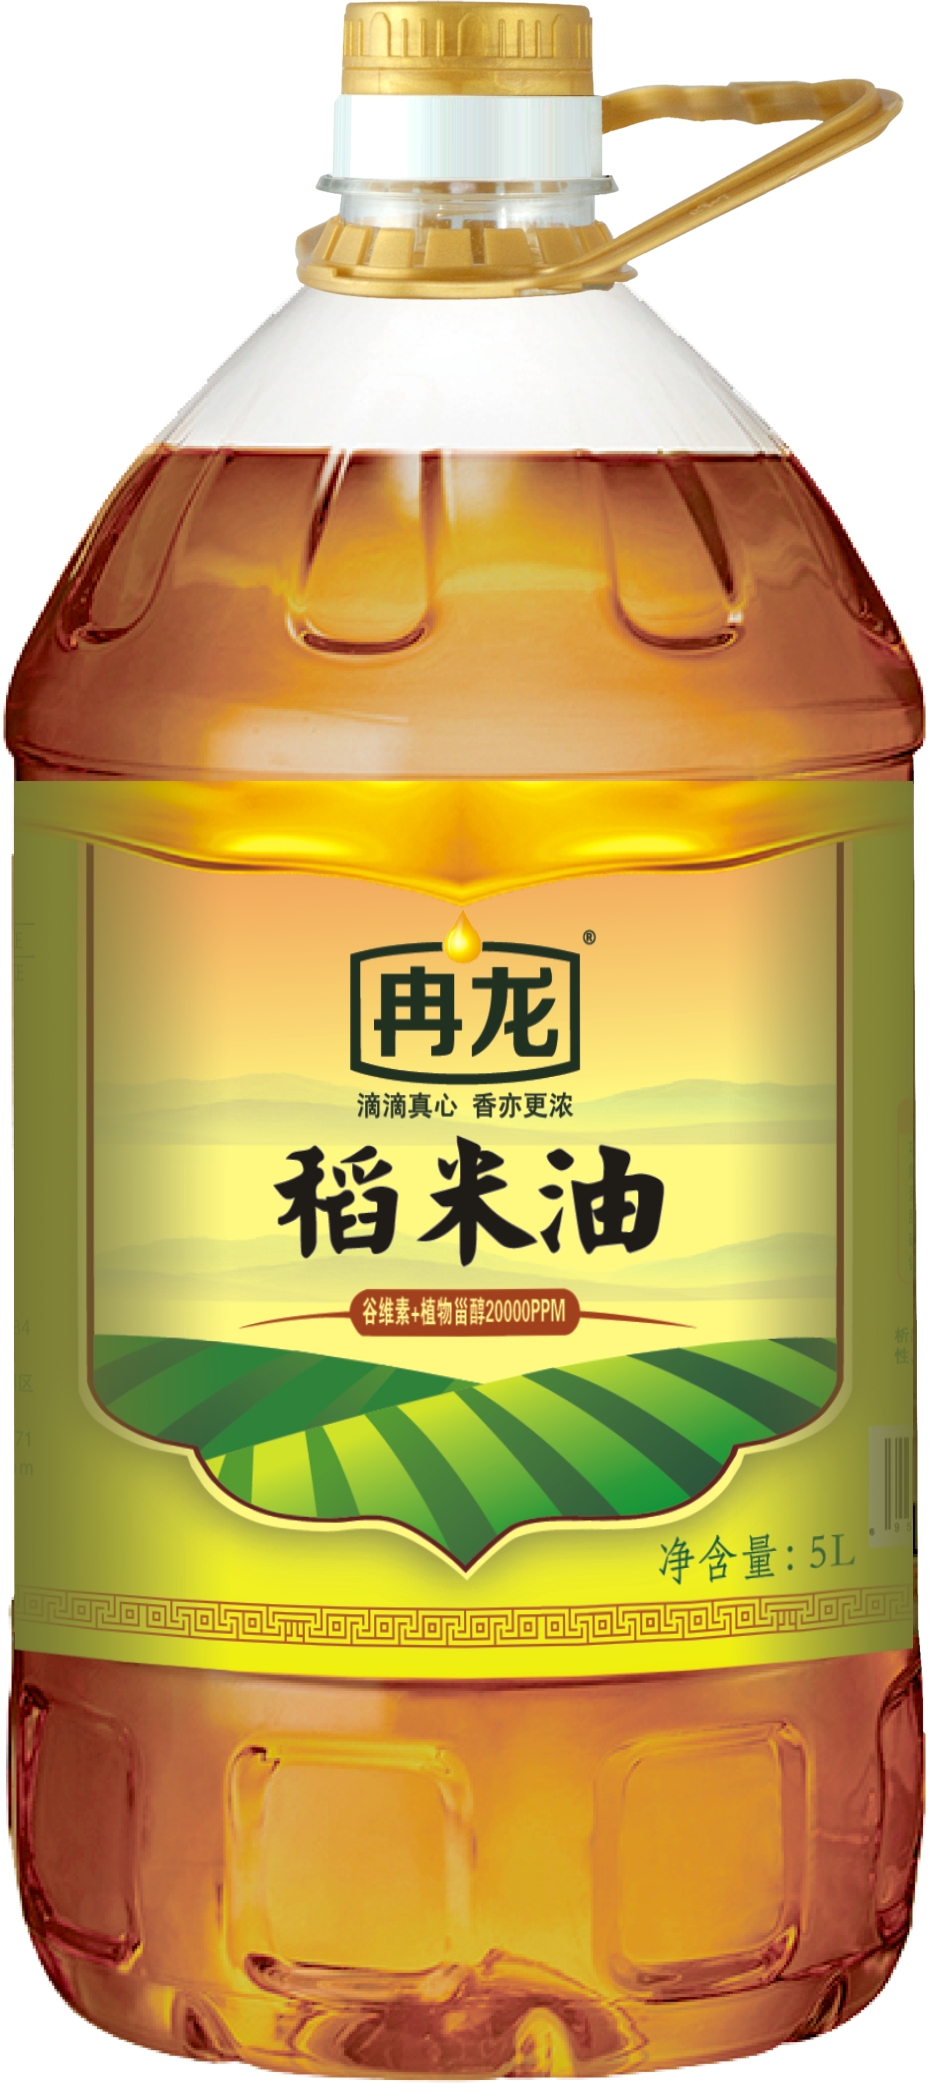 安徽稻米油冉龙菜籽油 家家都用得起的好油